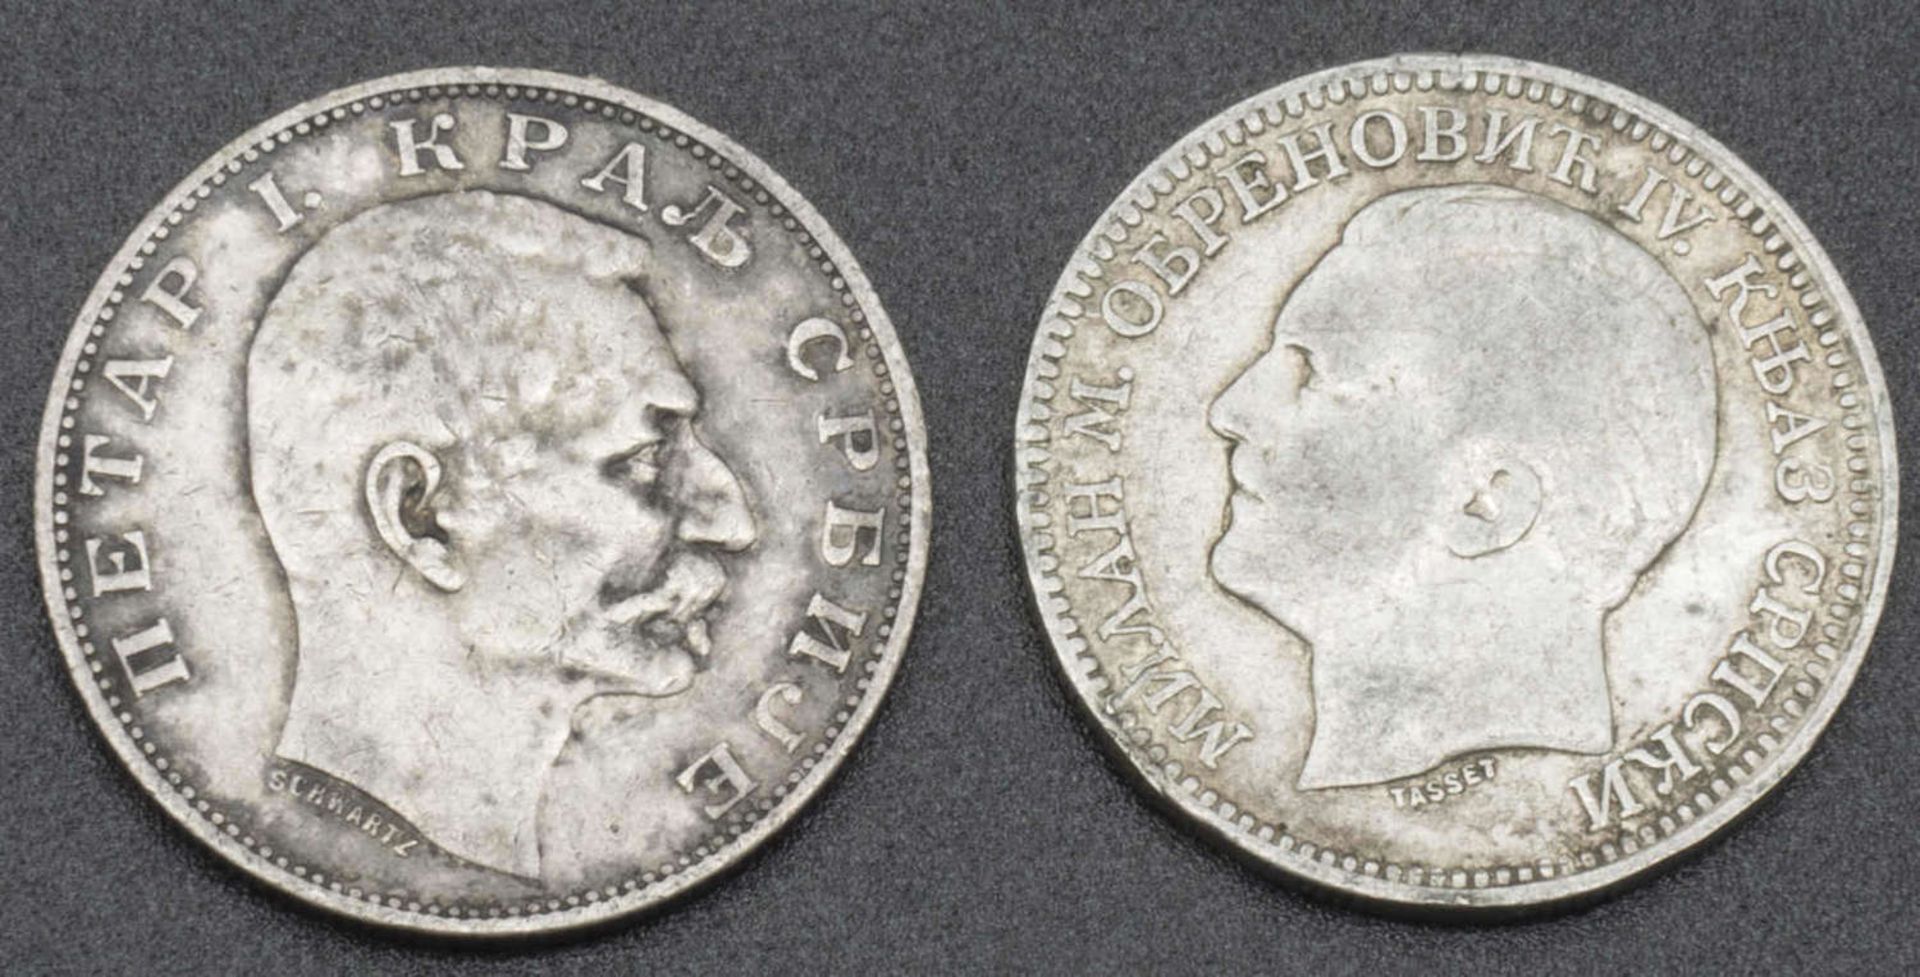 Bulgarien 2 Silbermünzen, 1x 2 Leva 1879 sowie 1x 2 Leva 1904. Bitte besichtigenBulgaria 2 silver